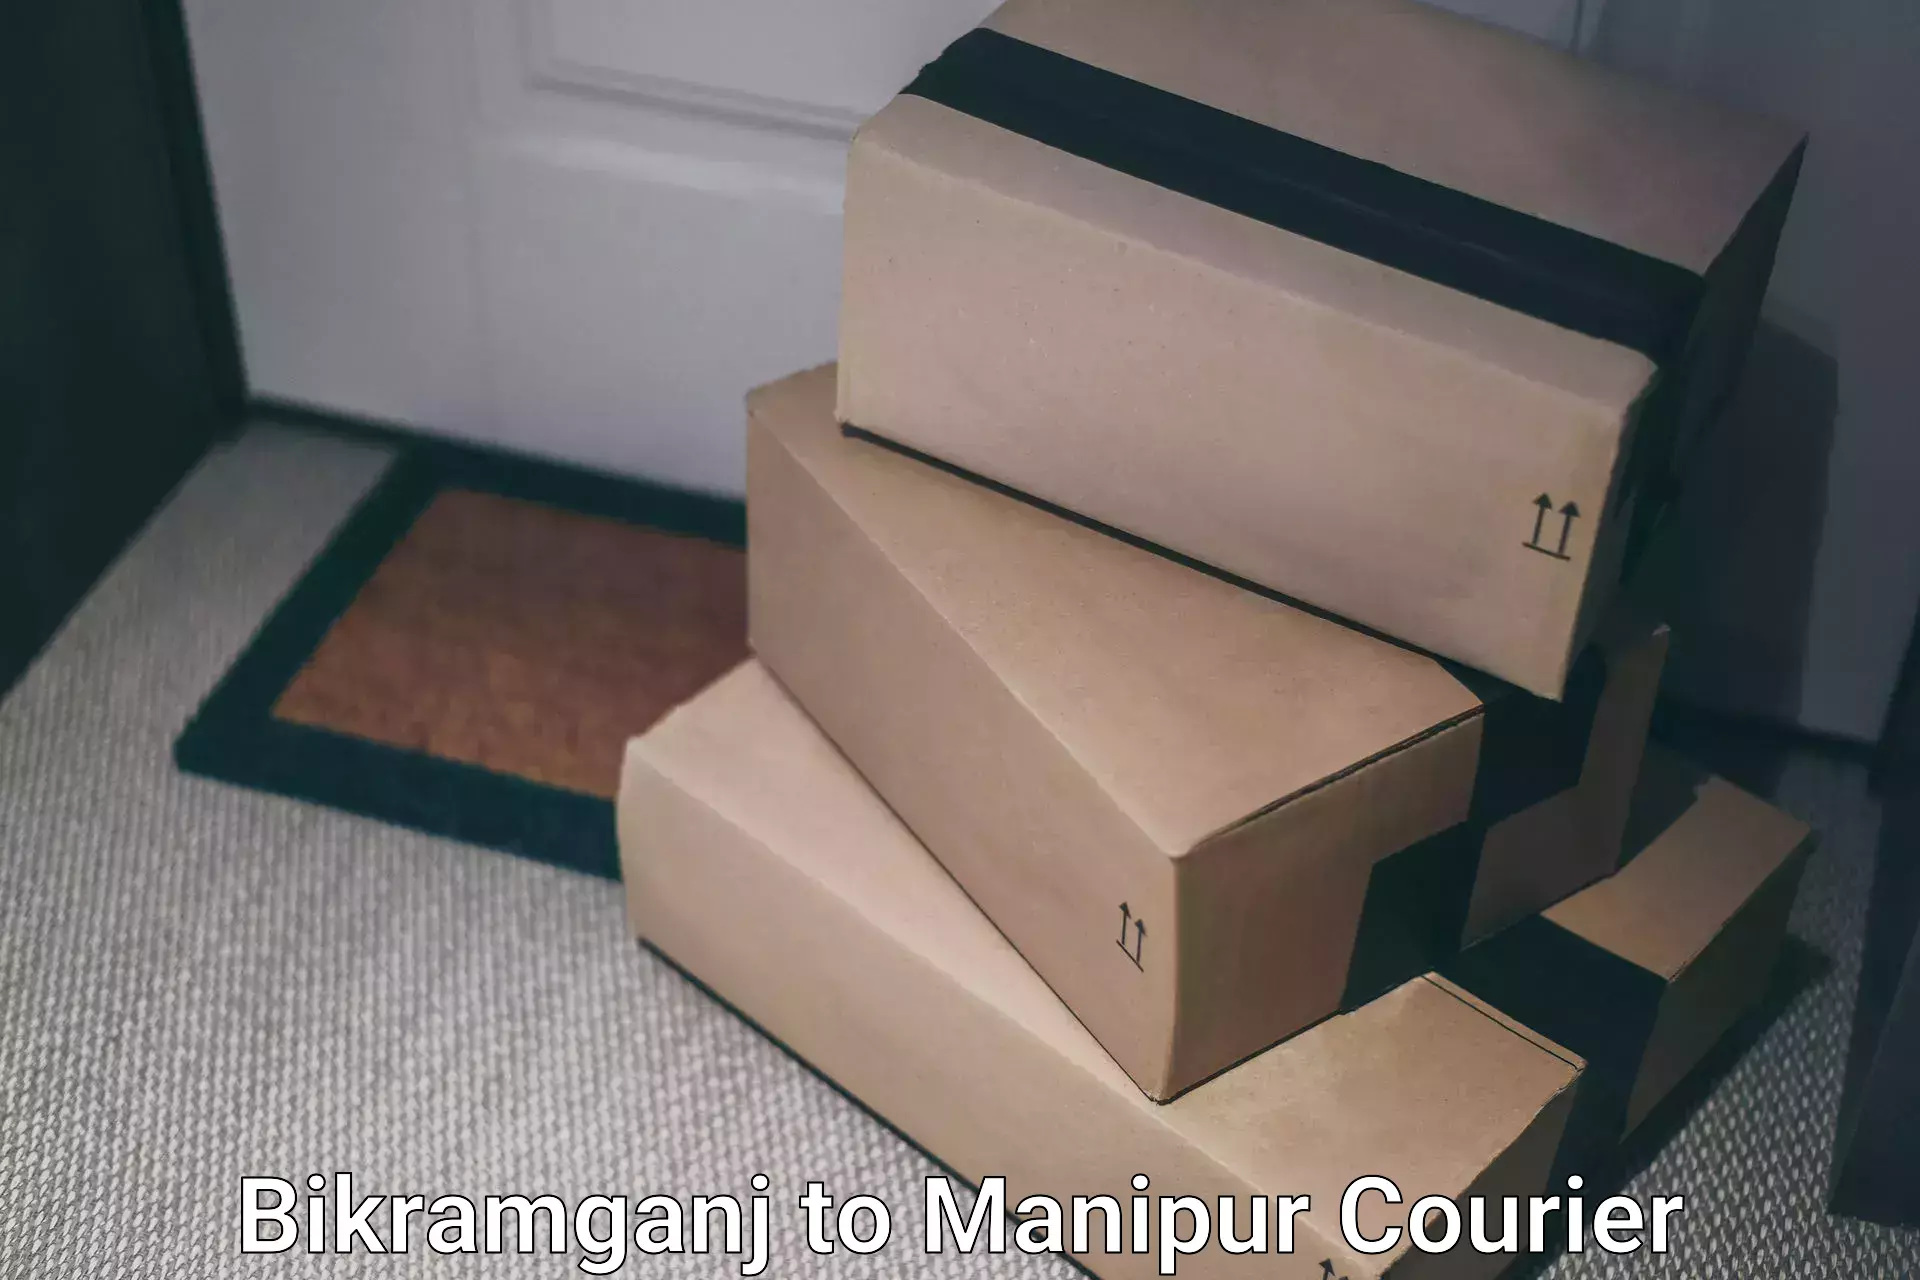 24-hour courier service Bikramganj to Manipur